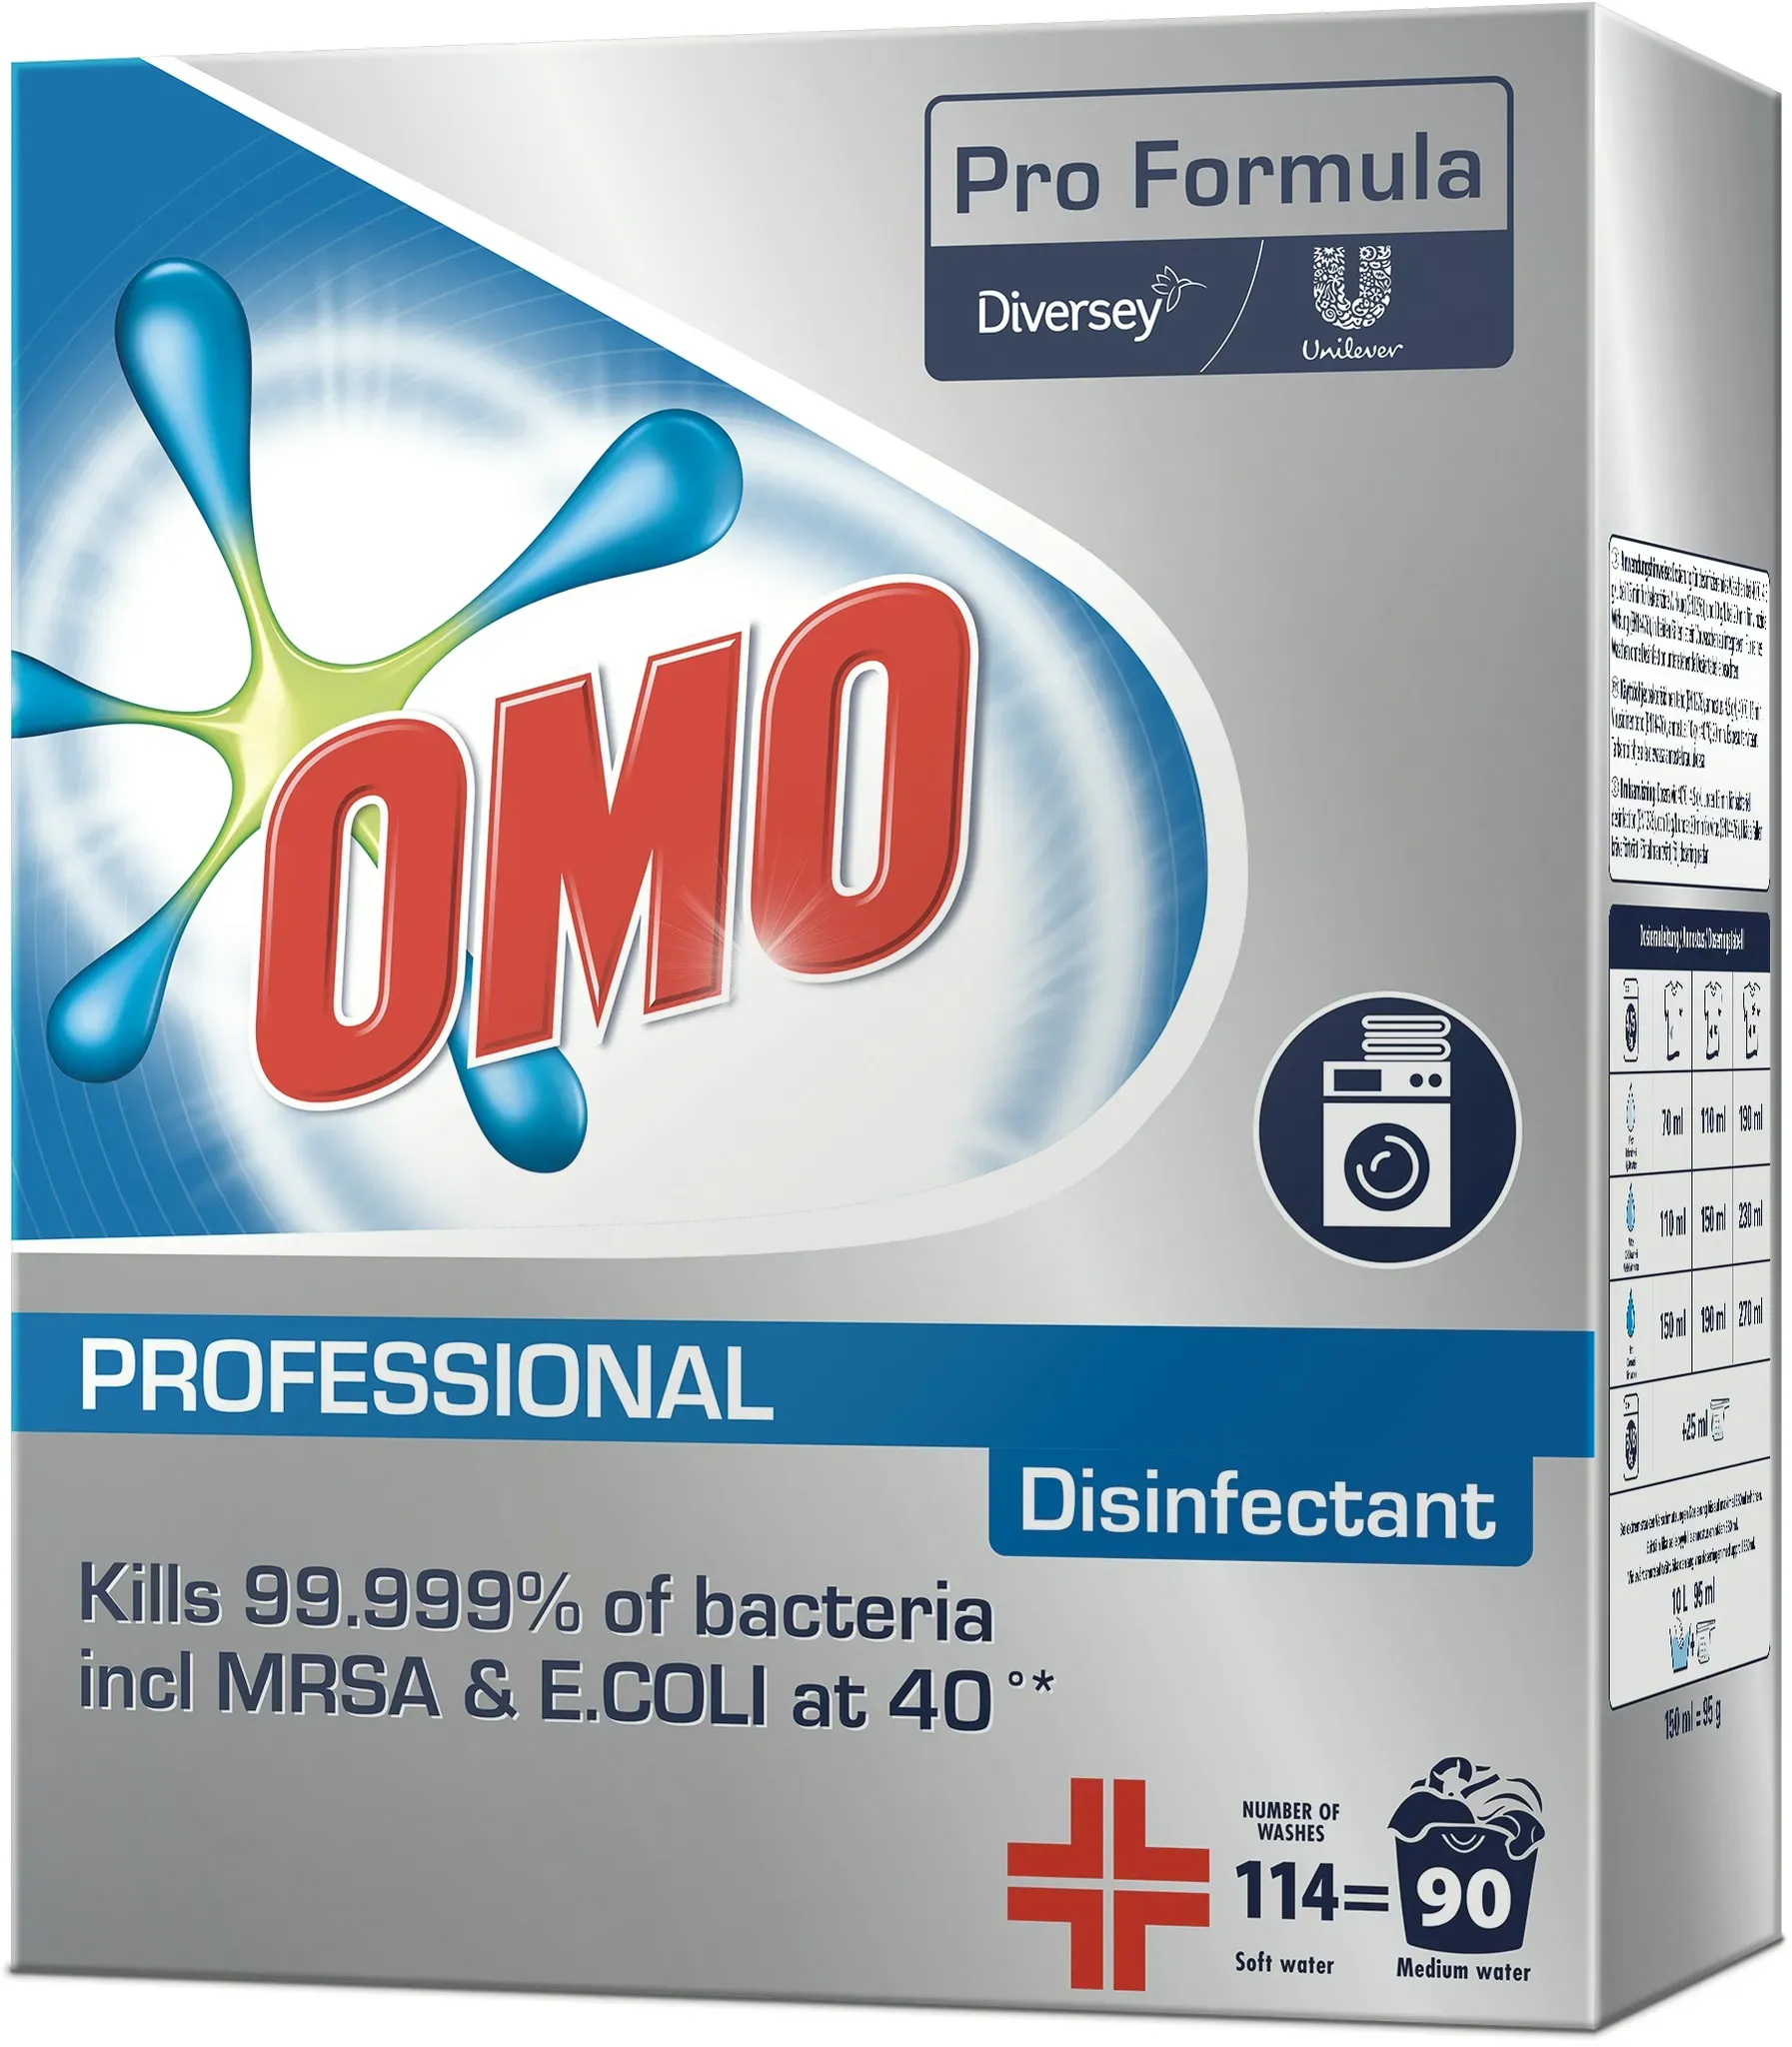 Pro Formula OMO Professional Desinfektionsvollwaschmittel ab 40°C, tötet 99,999% der Bakterien, 90 Wäschen